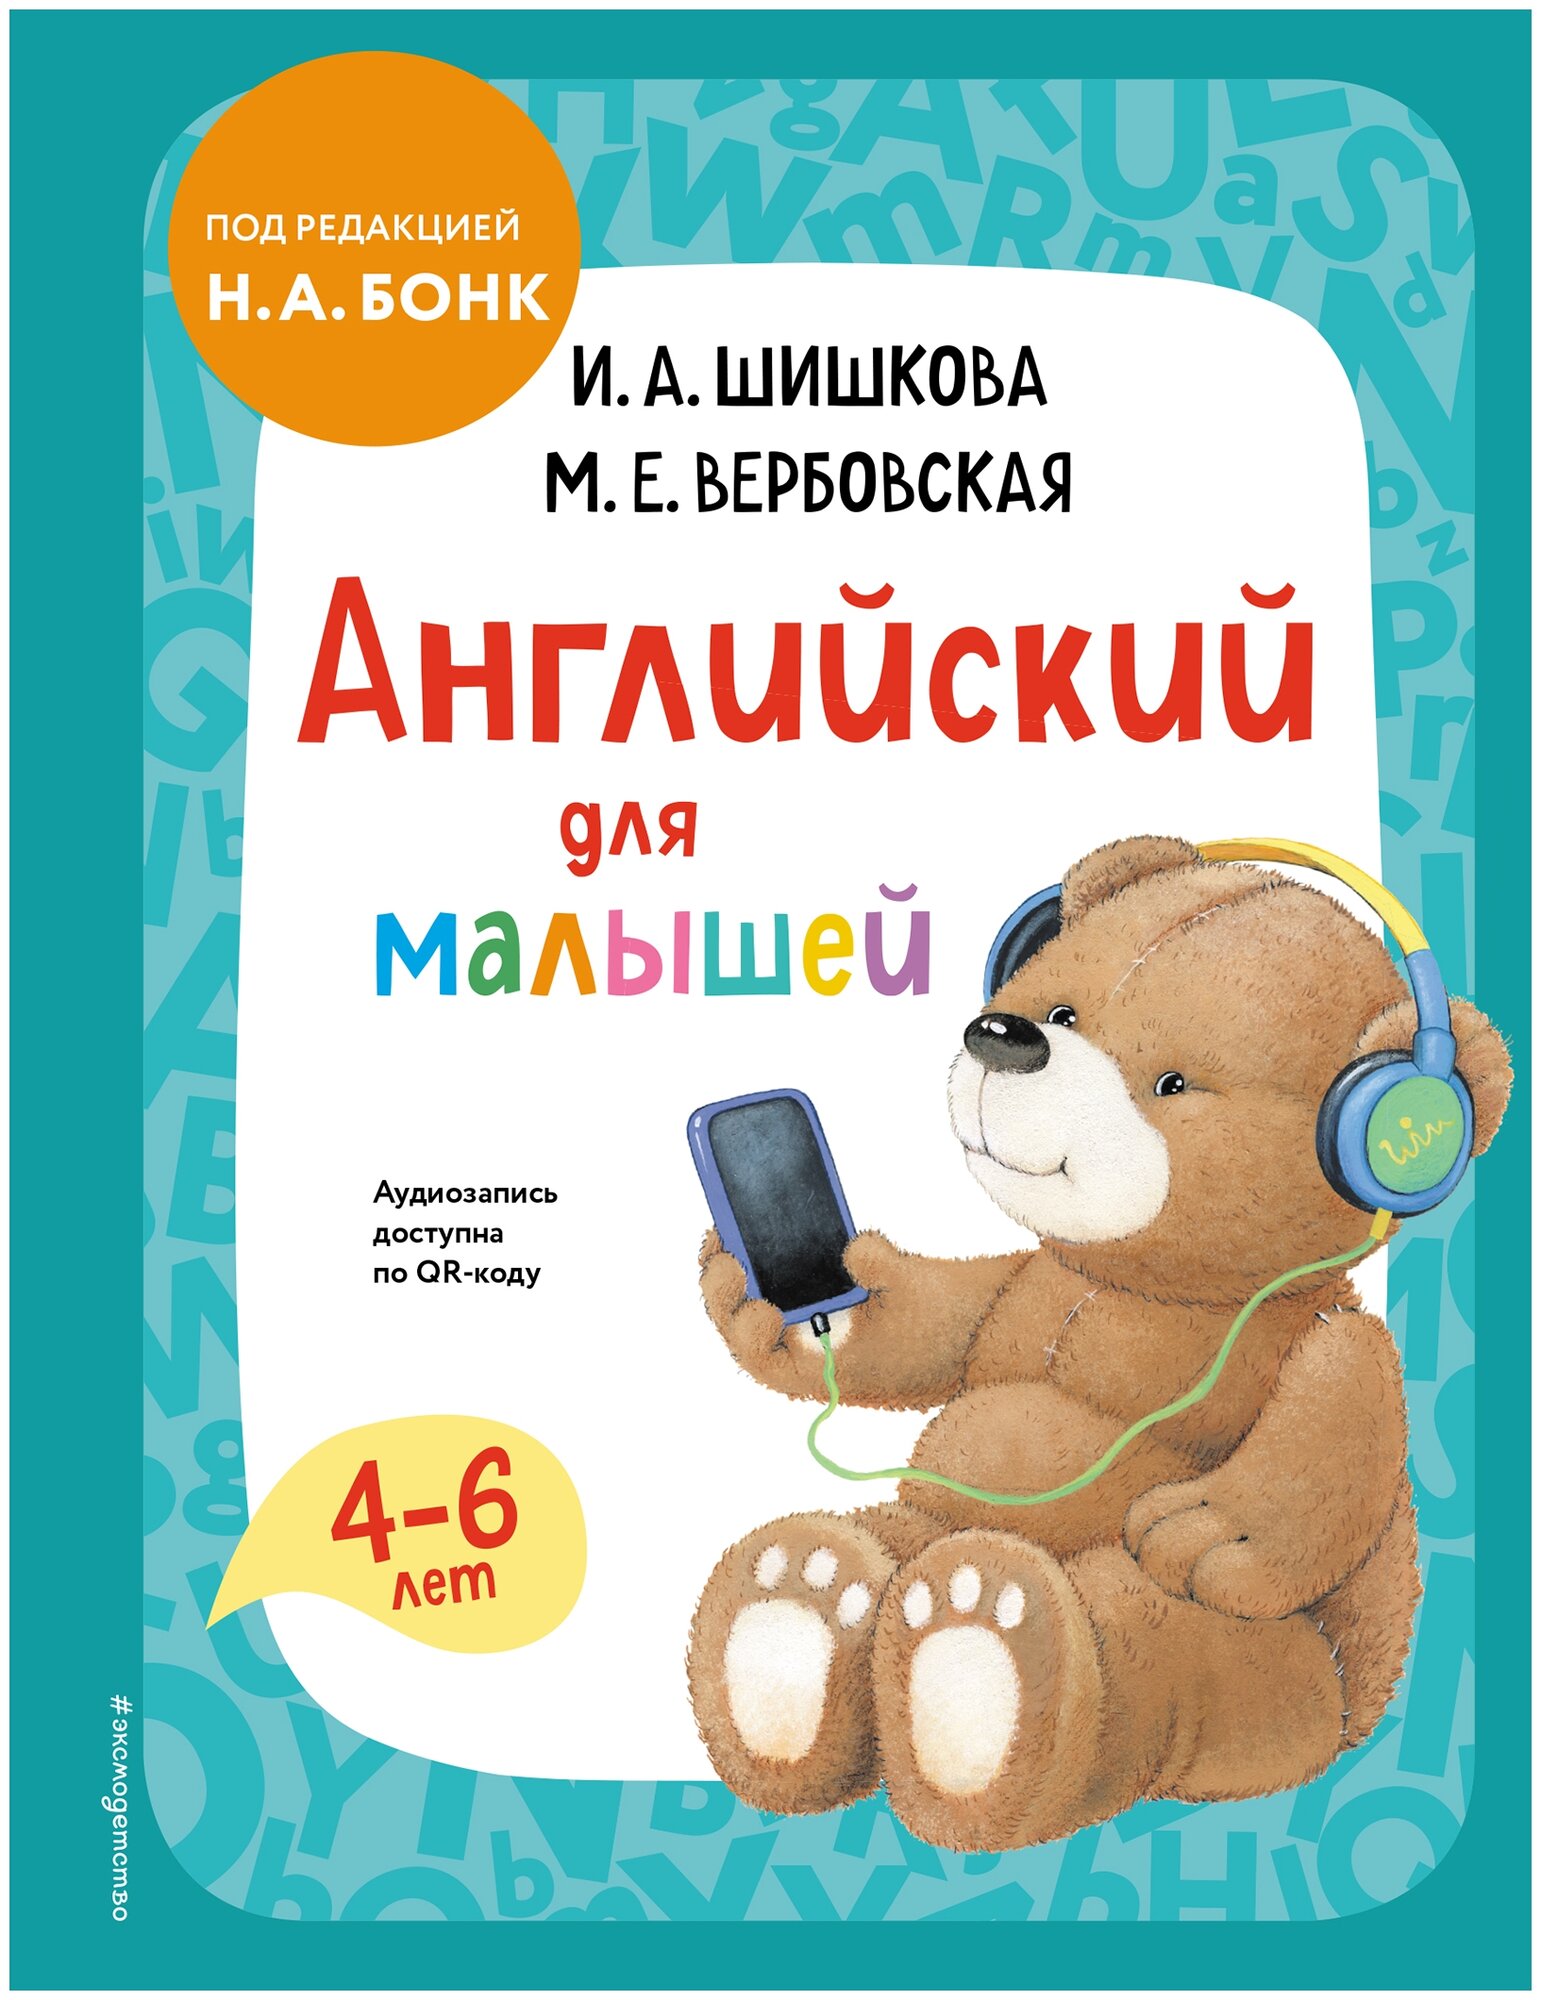 Шишкова И.А. Вербовская М.Е. "Английский для малышей. Учебник + аудиозапись по QR-коду"